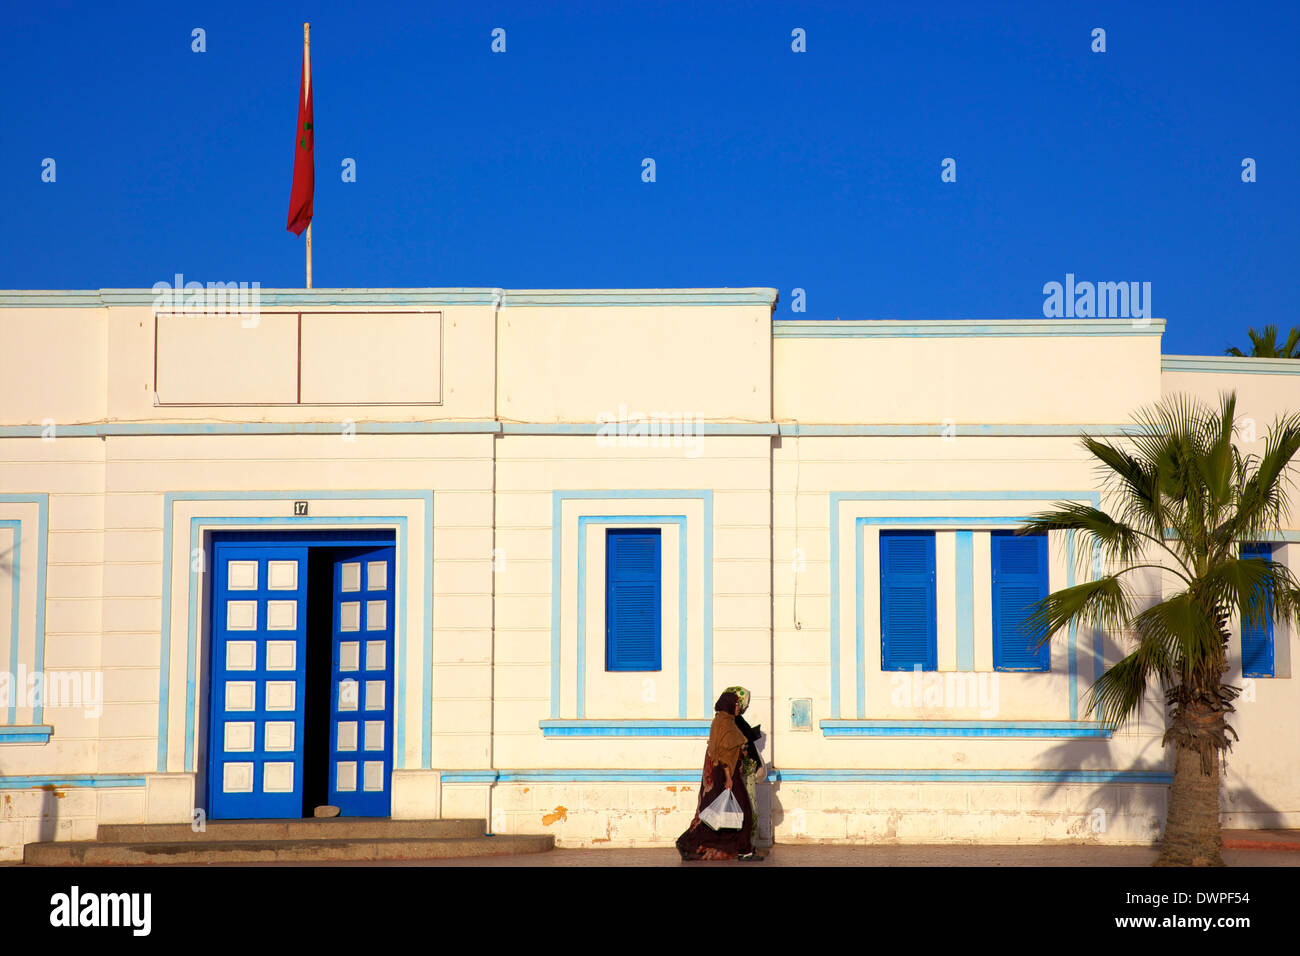 Architettura Art Deco, Sidi Ifni, Marocco, Africa del Nord Foto Stock